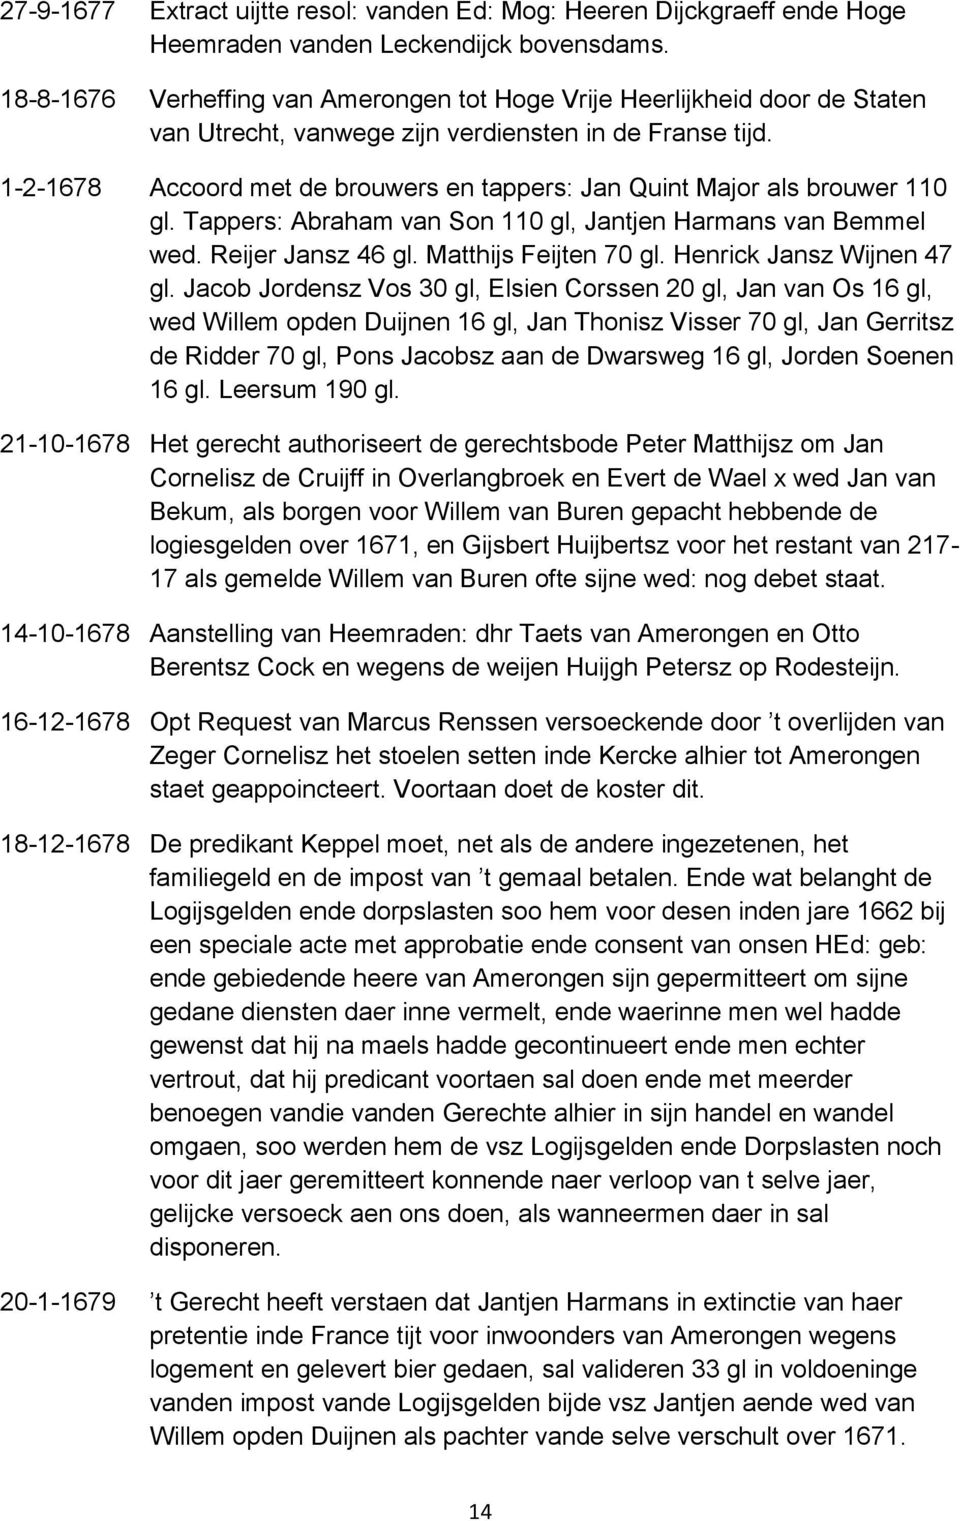 1-2-1678 Accoord met de brouwers en tappers: Jan Quint Major als brouwer 110 gl. Tappers: Abraham van Son 110 gl, Jantjen Harmans van Bemmel wed. Reijer Jansz 46 gl. Matthijs Feijten 70 gl.